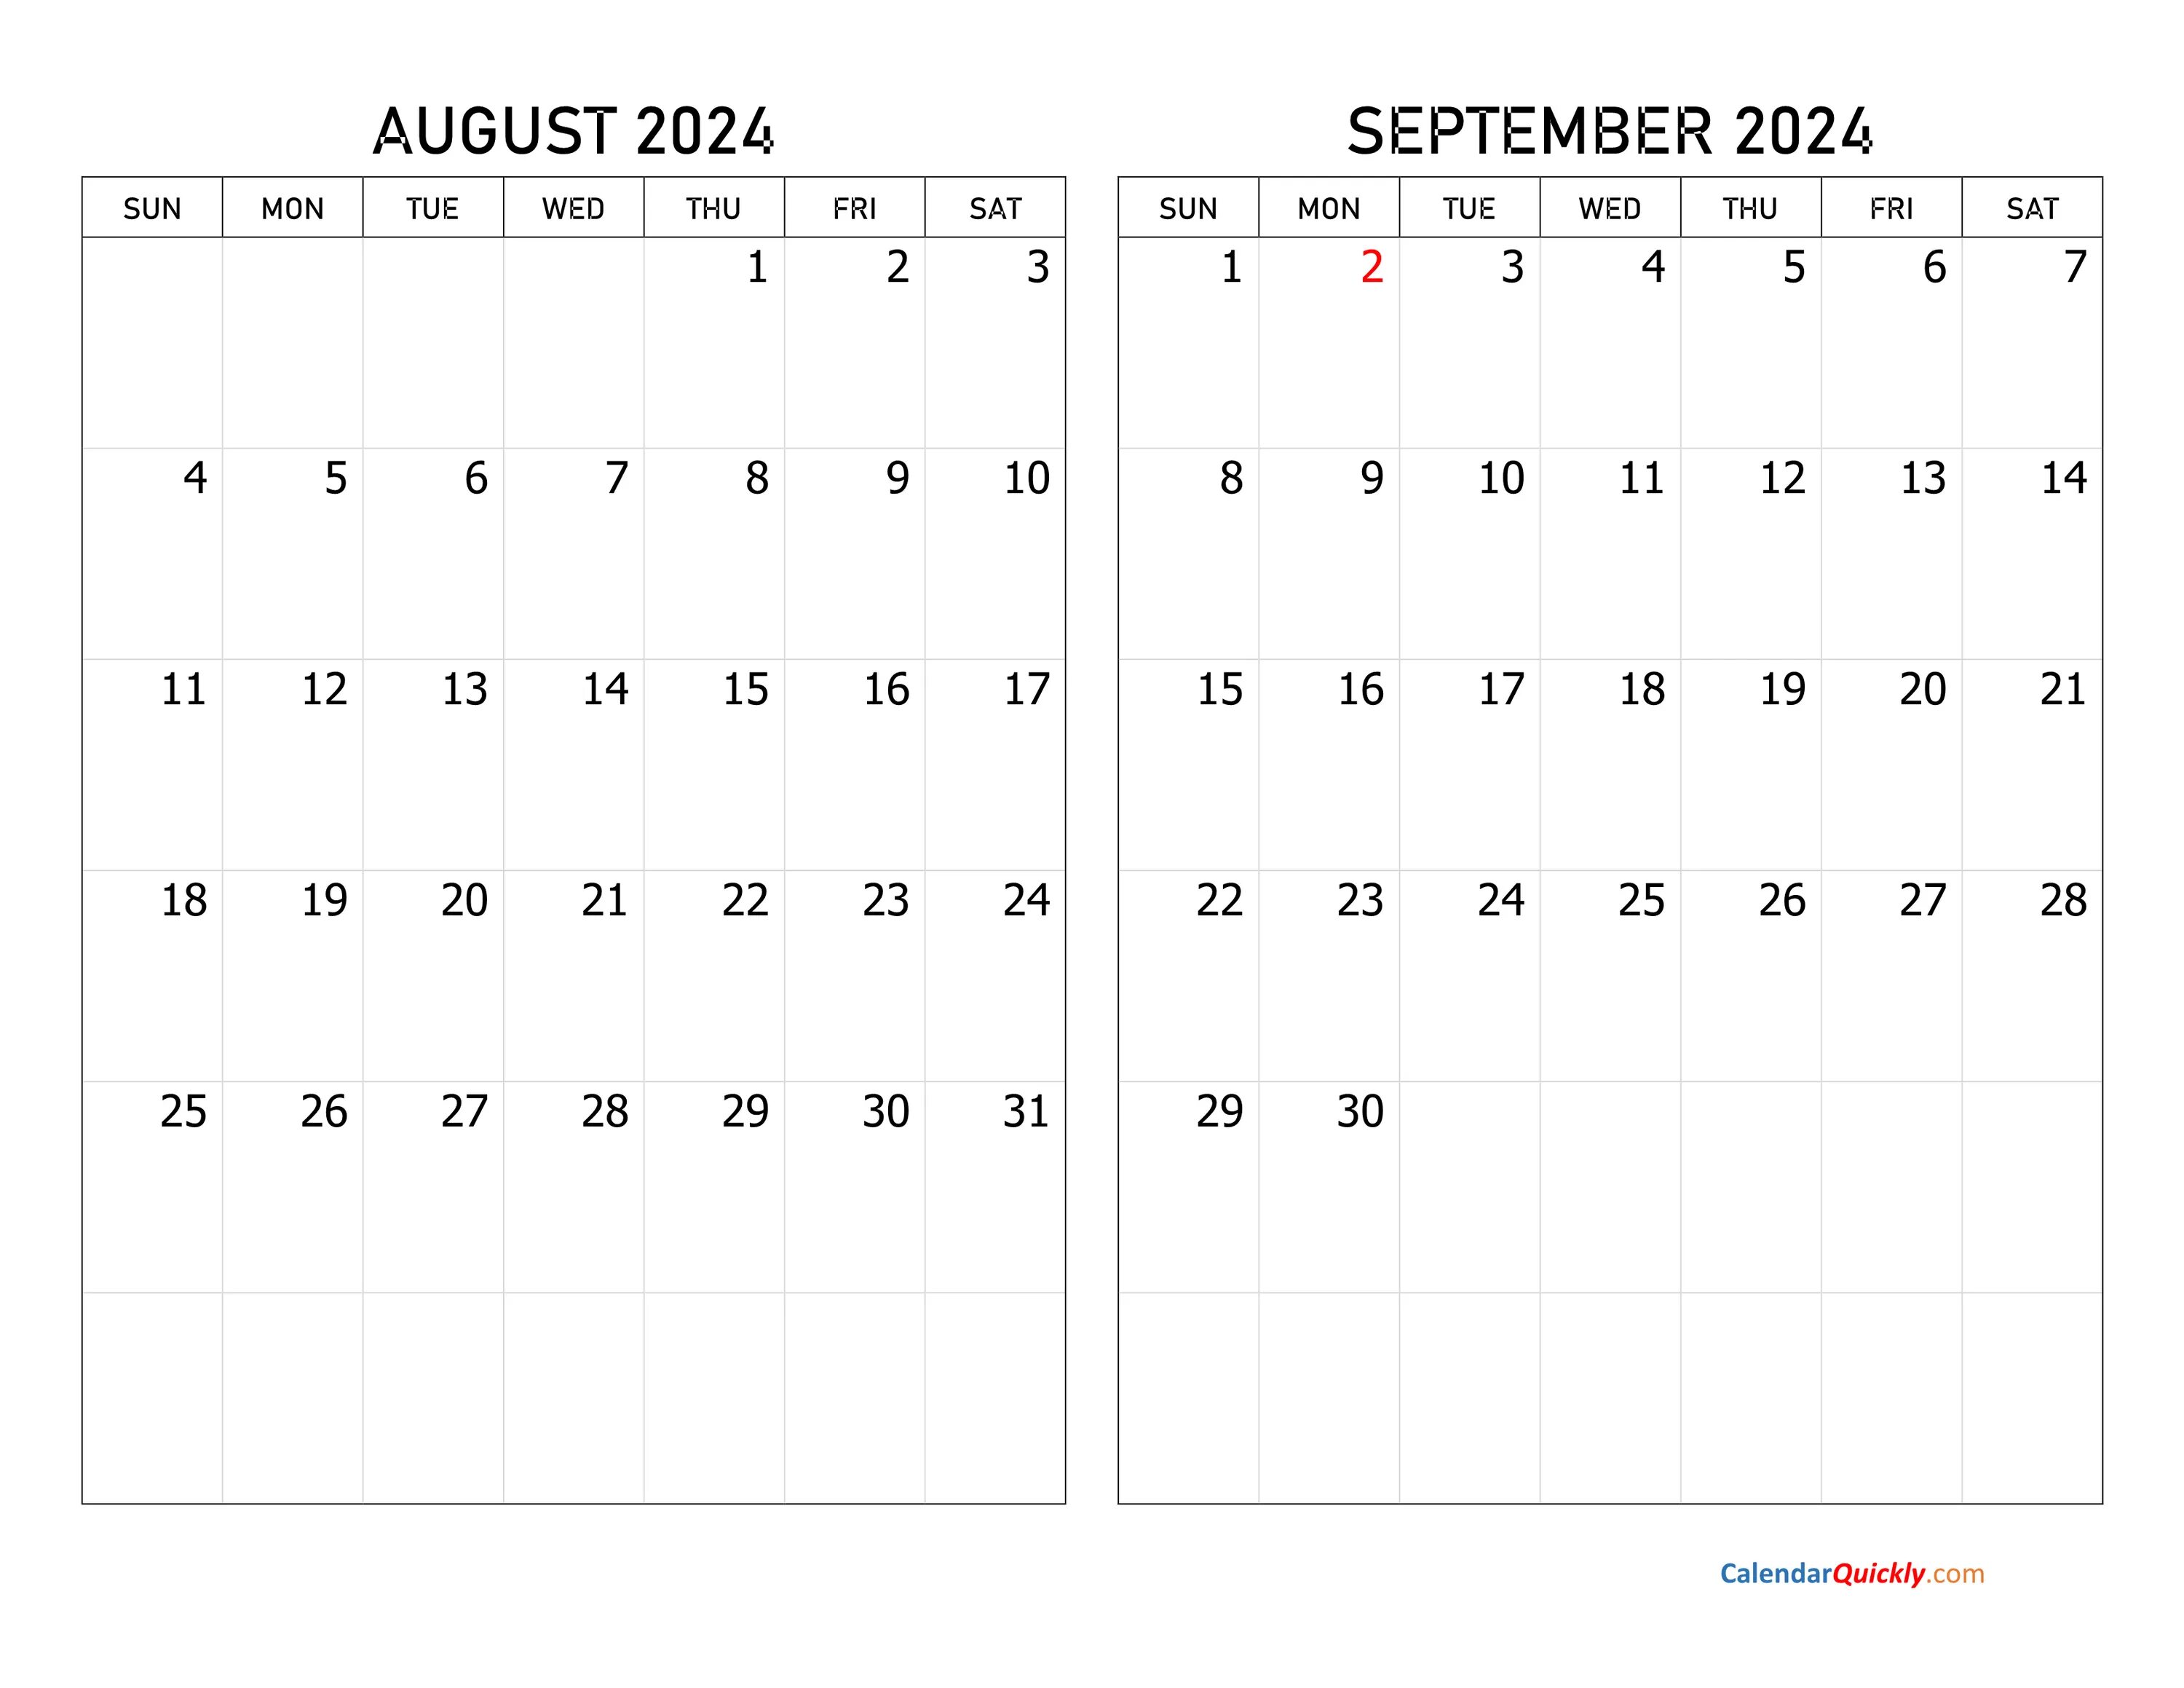 Пост март апрель 2024. Календарь декабрь 2022. Календарь сентябрь октябрь 2022. Календарь октябрь ноябрь 2022. Календарь декабрь 2022 январь 2023.